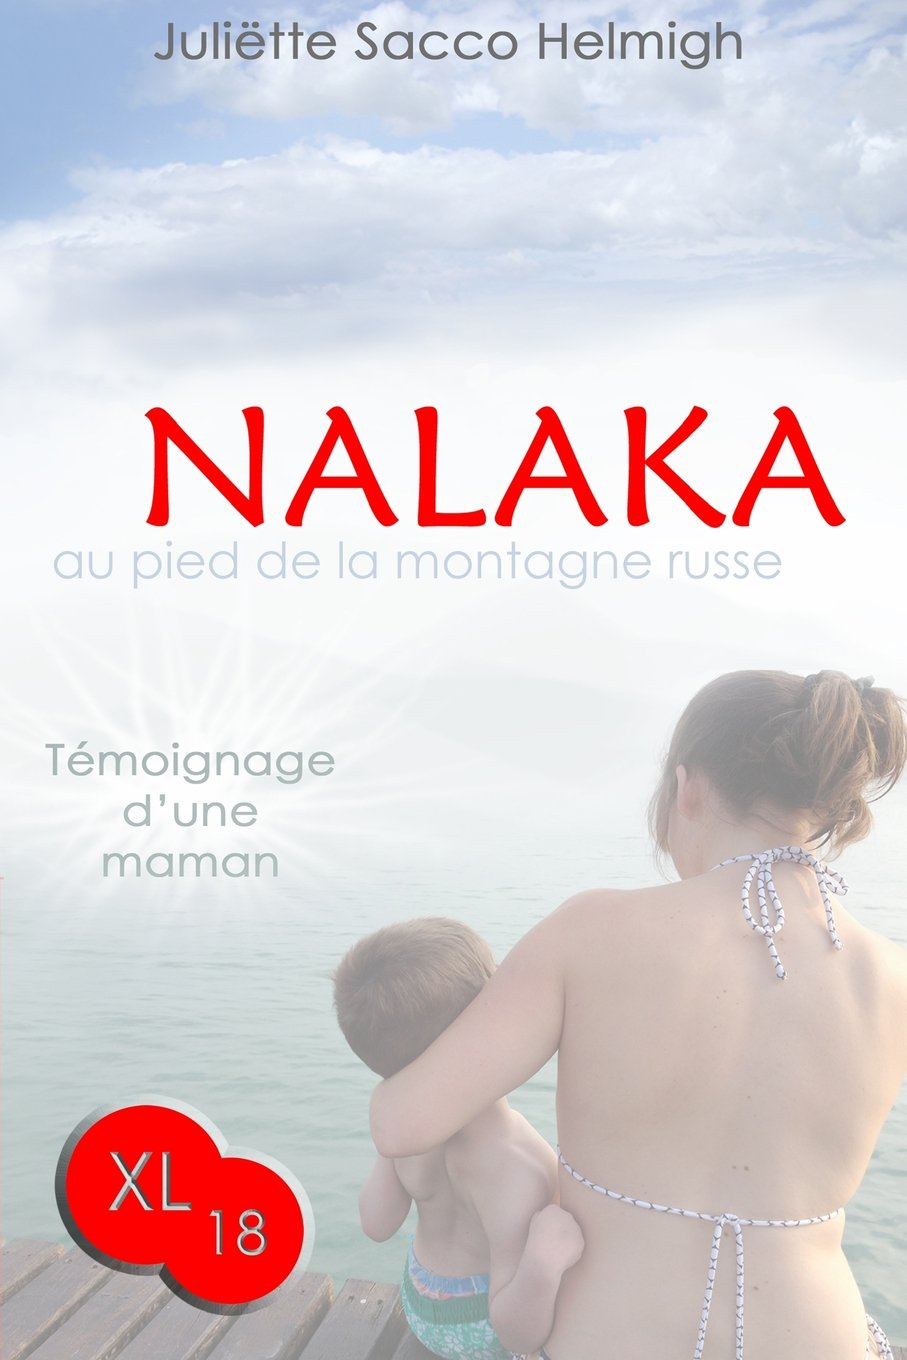 Nalaka - au pied de la montagne russe: Temoignage d'une maman